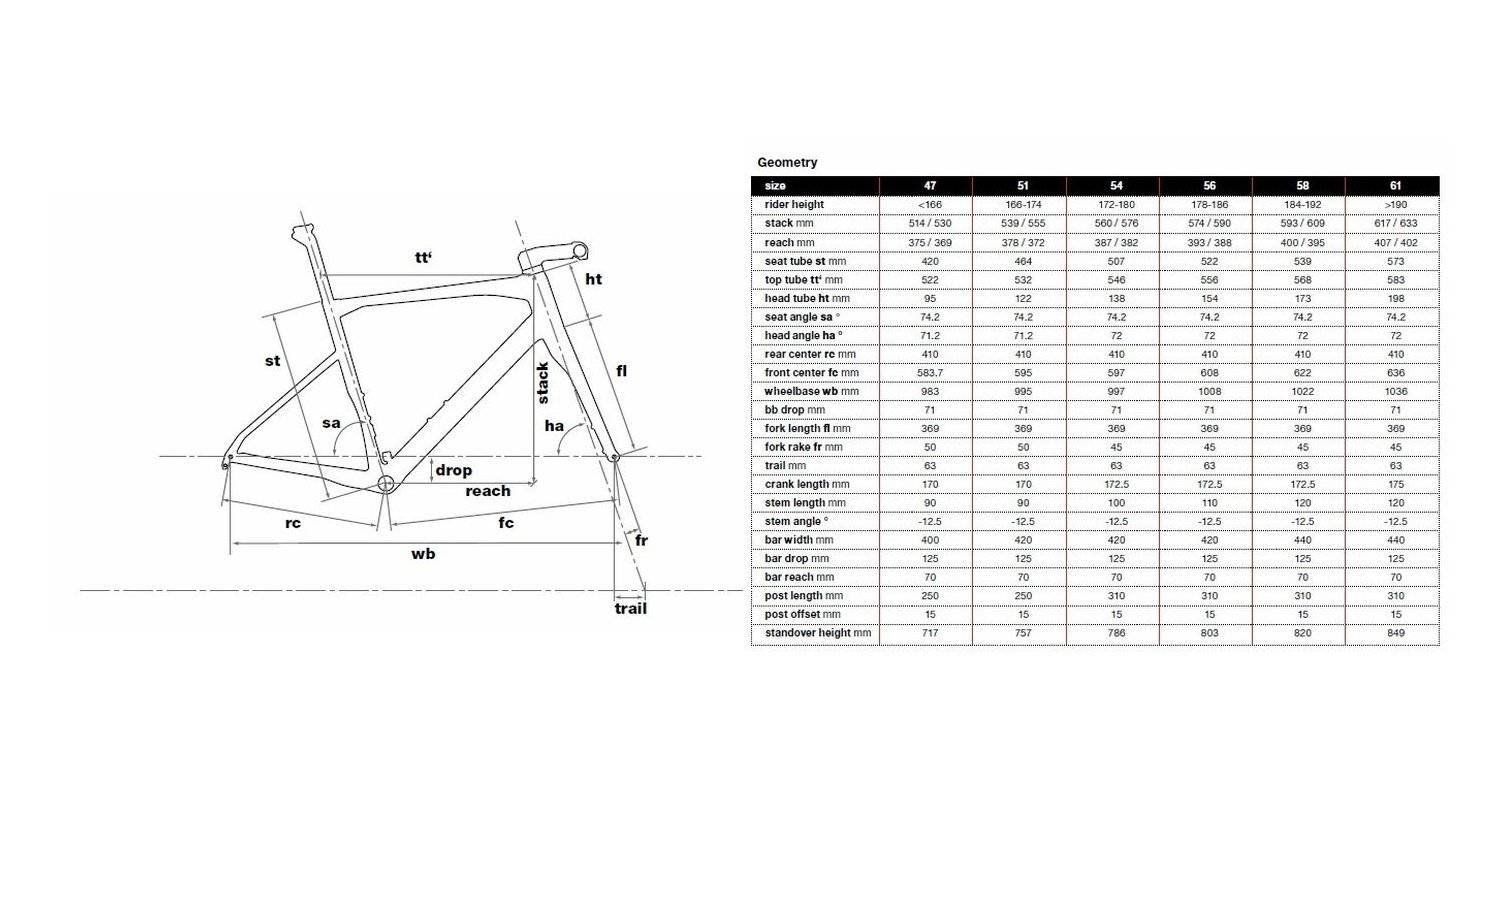 Рама велосипеда м. Геометрия рамы ХВЗ 52 рост. Геометрия велосипедной рамы стелс. Фокс 802 размер рамы. Forward 2250 геометрия рамы.